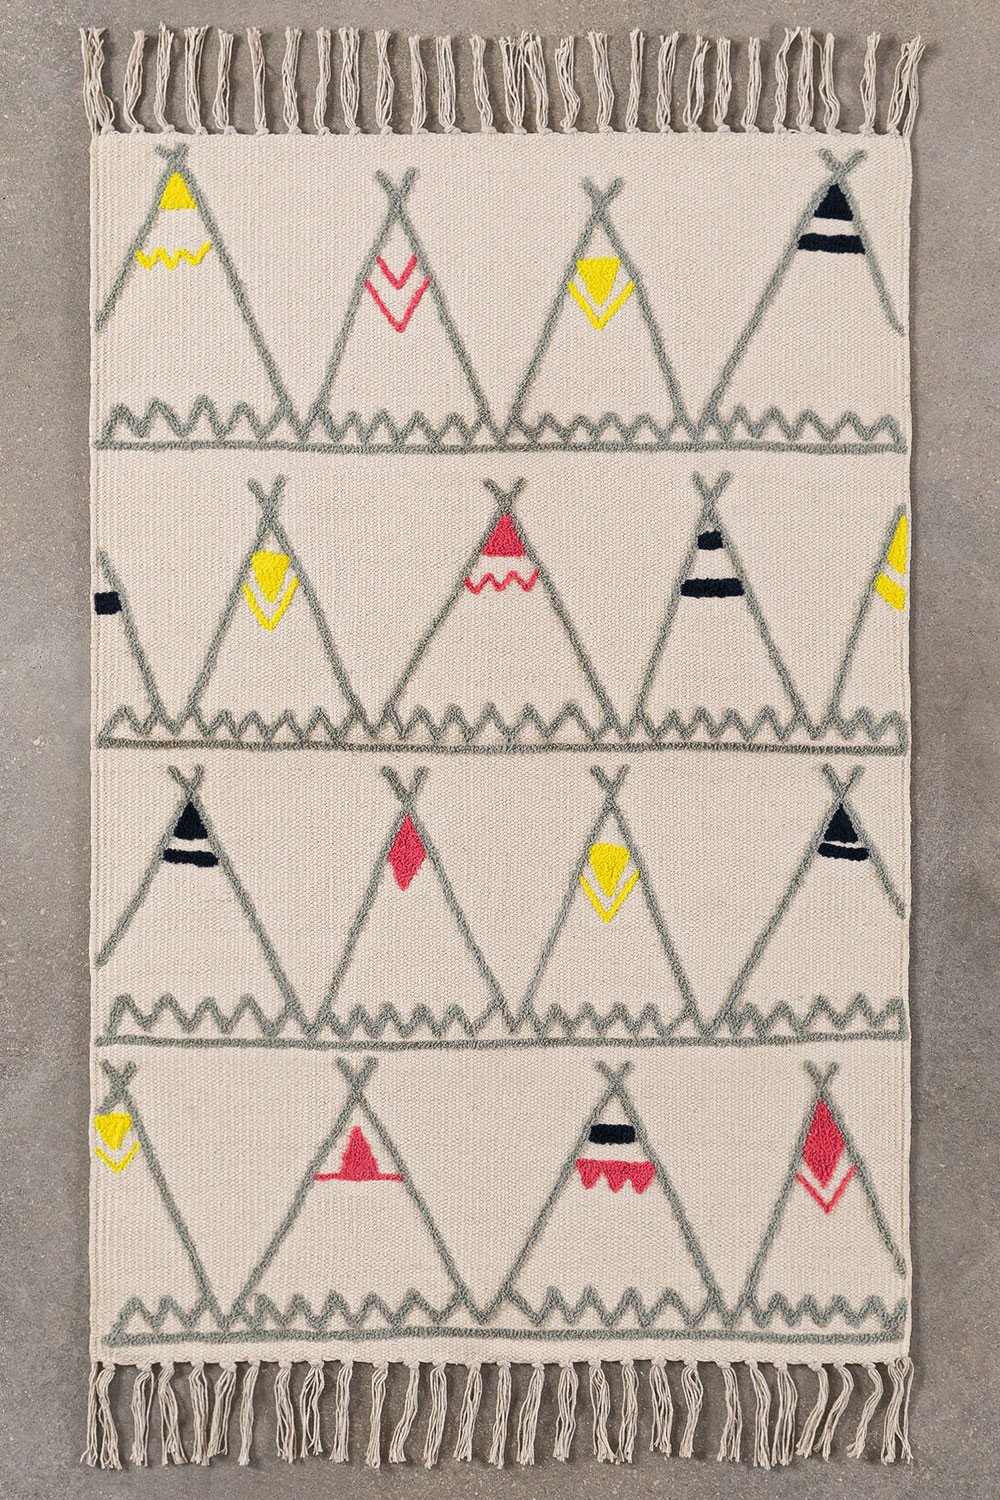 Katoenen vloerkleed (63,5x111,5 cm) Witko Kids, galerij beeld 1386521